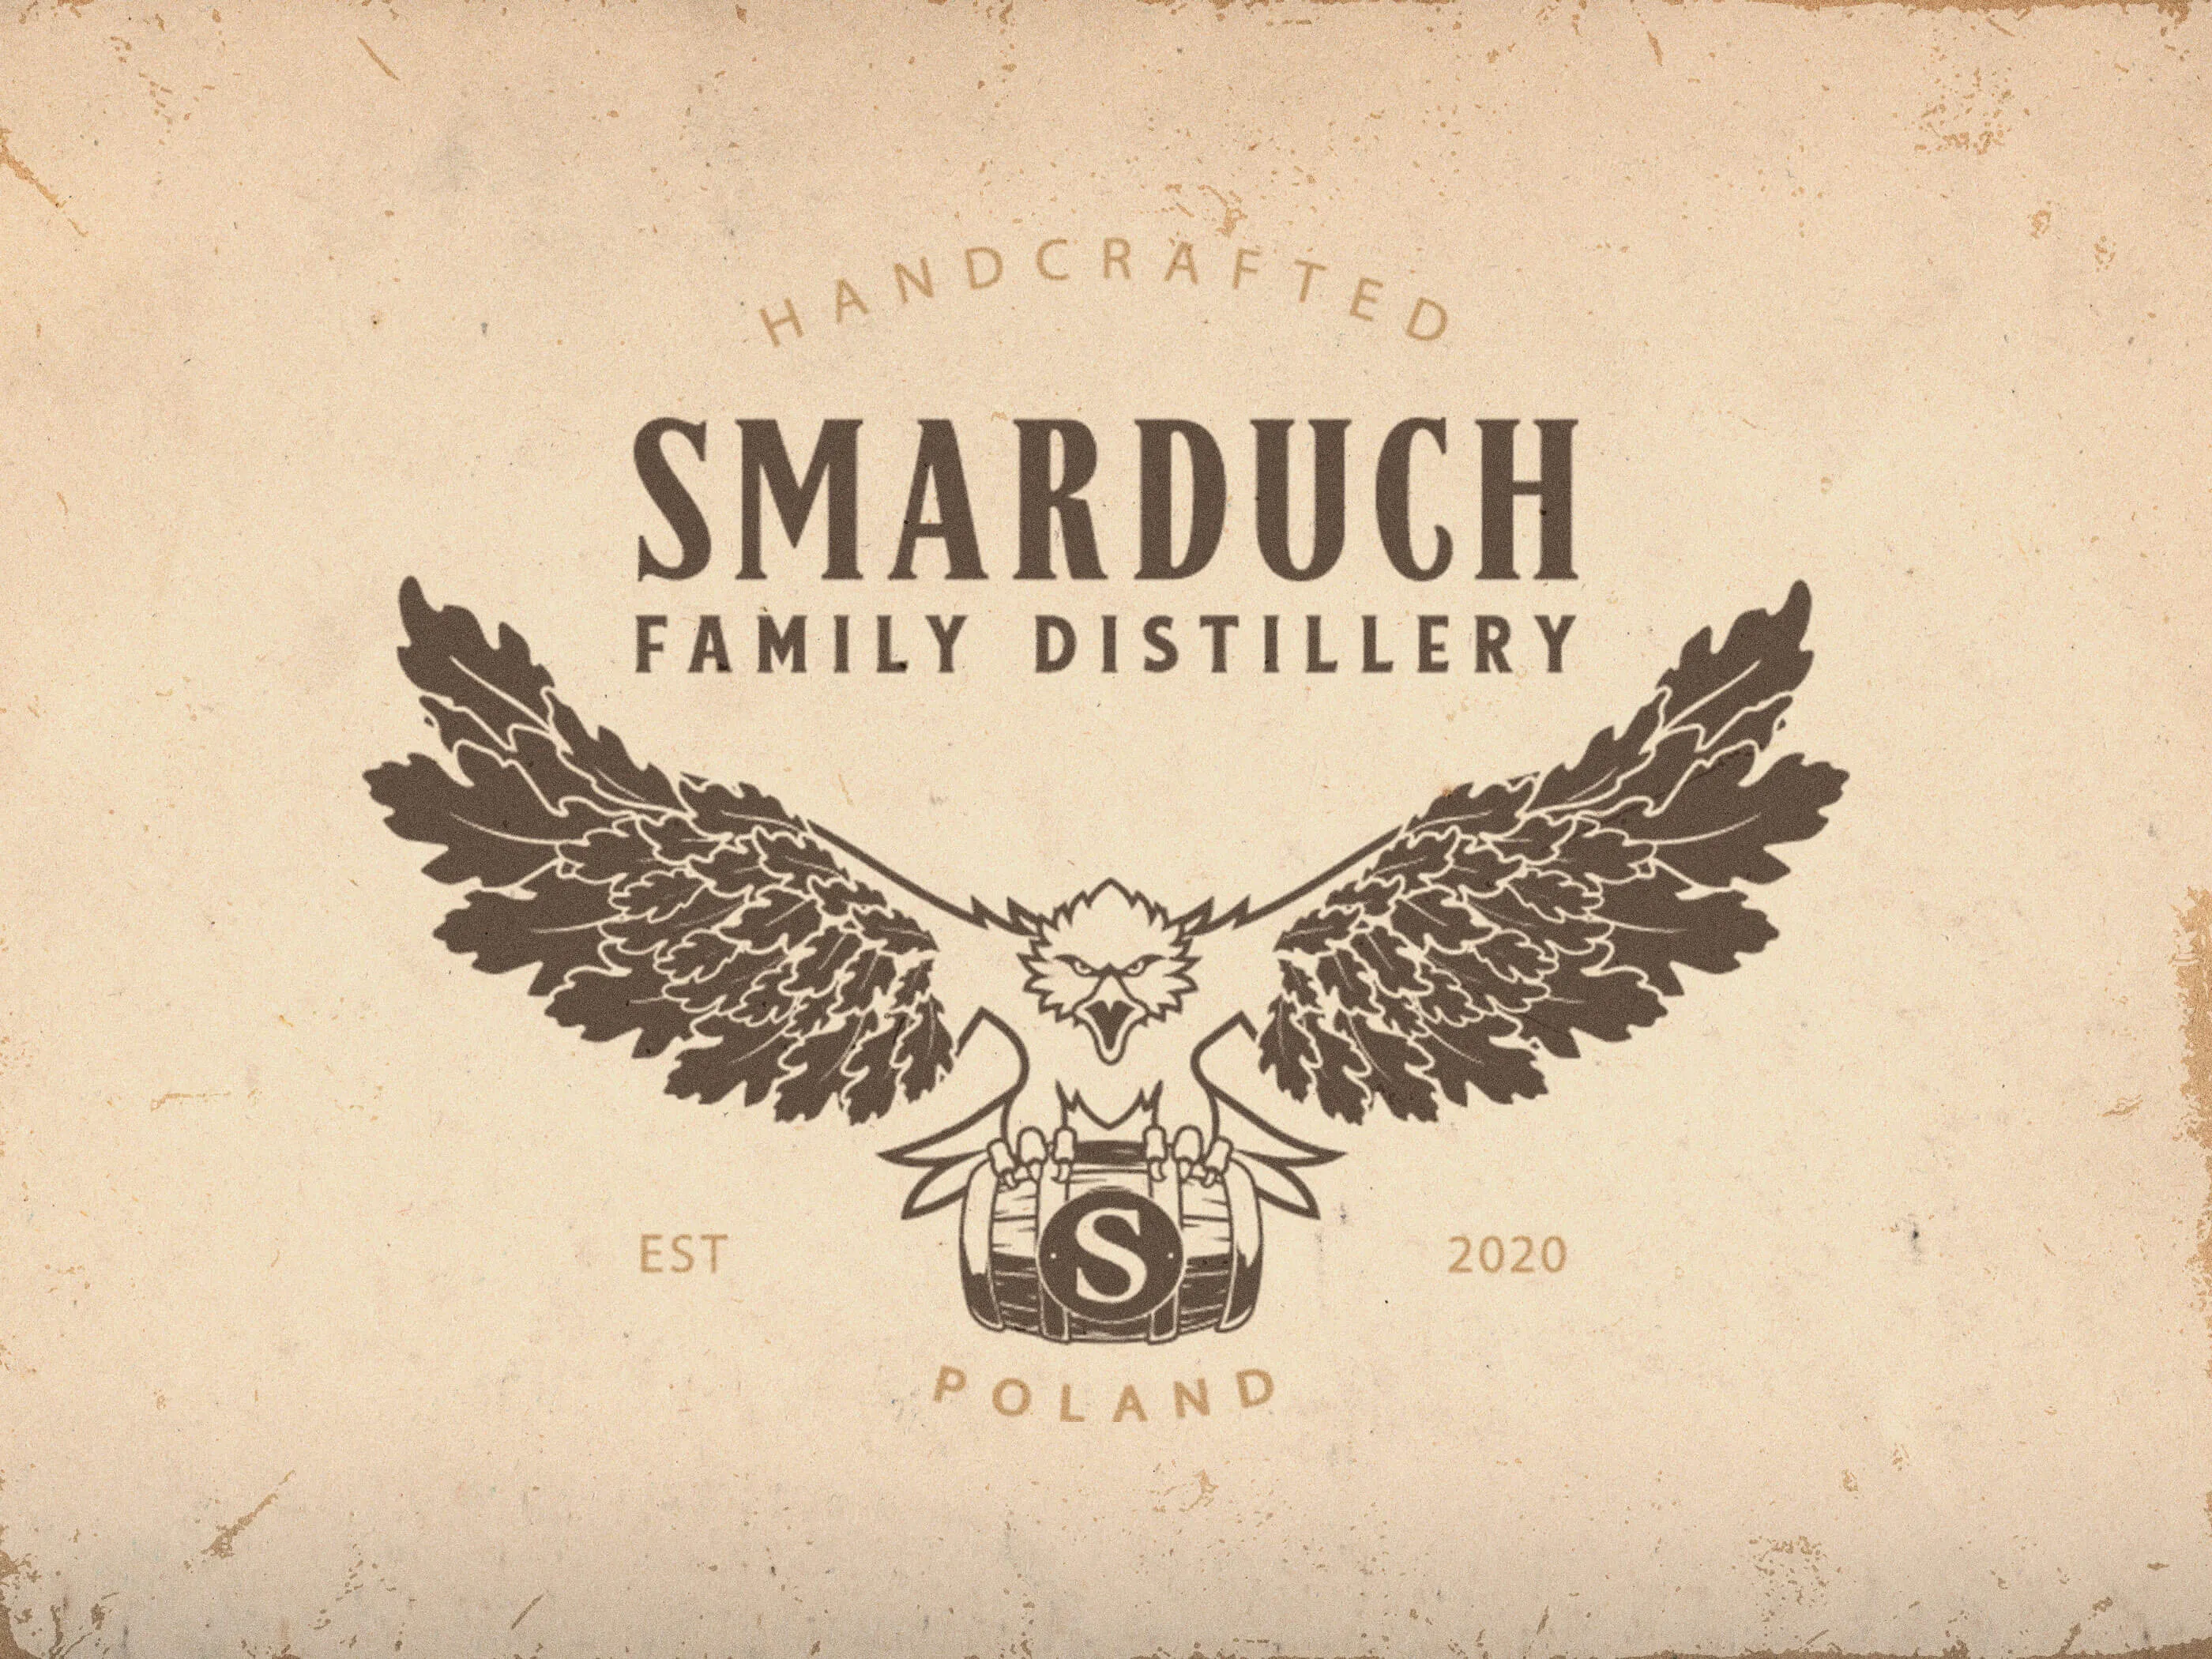 Logo dla rodzinnej destylarni Smarduch Family distillery na teksturze papieru